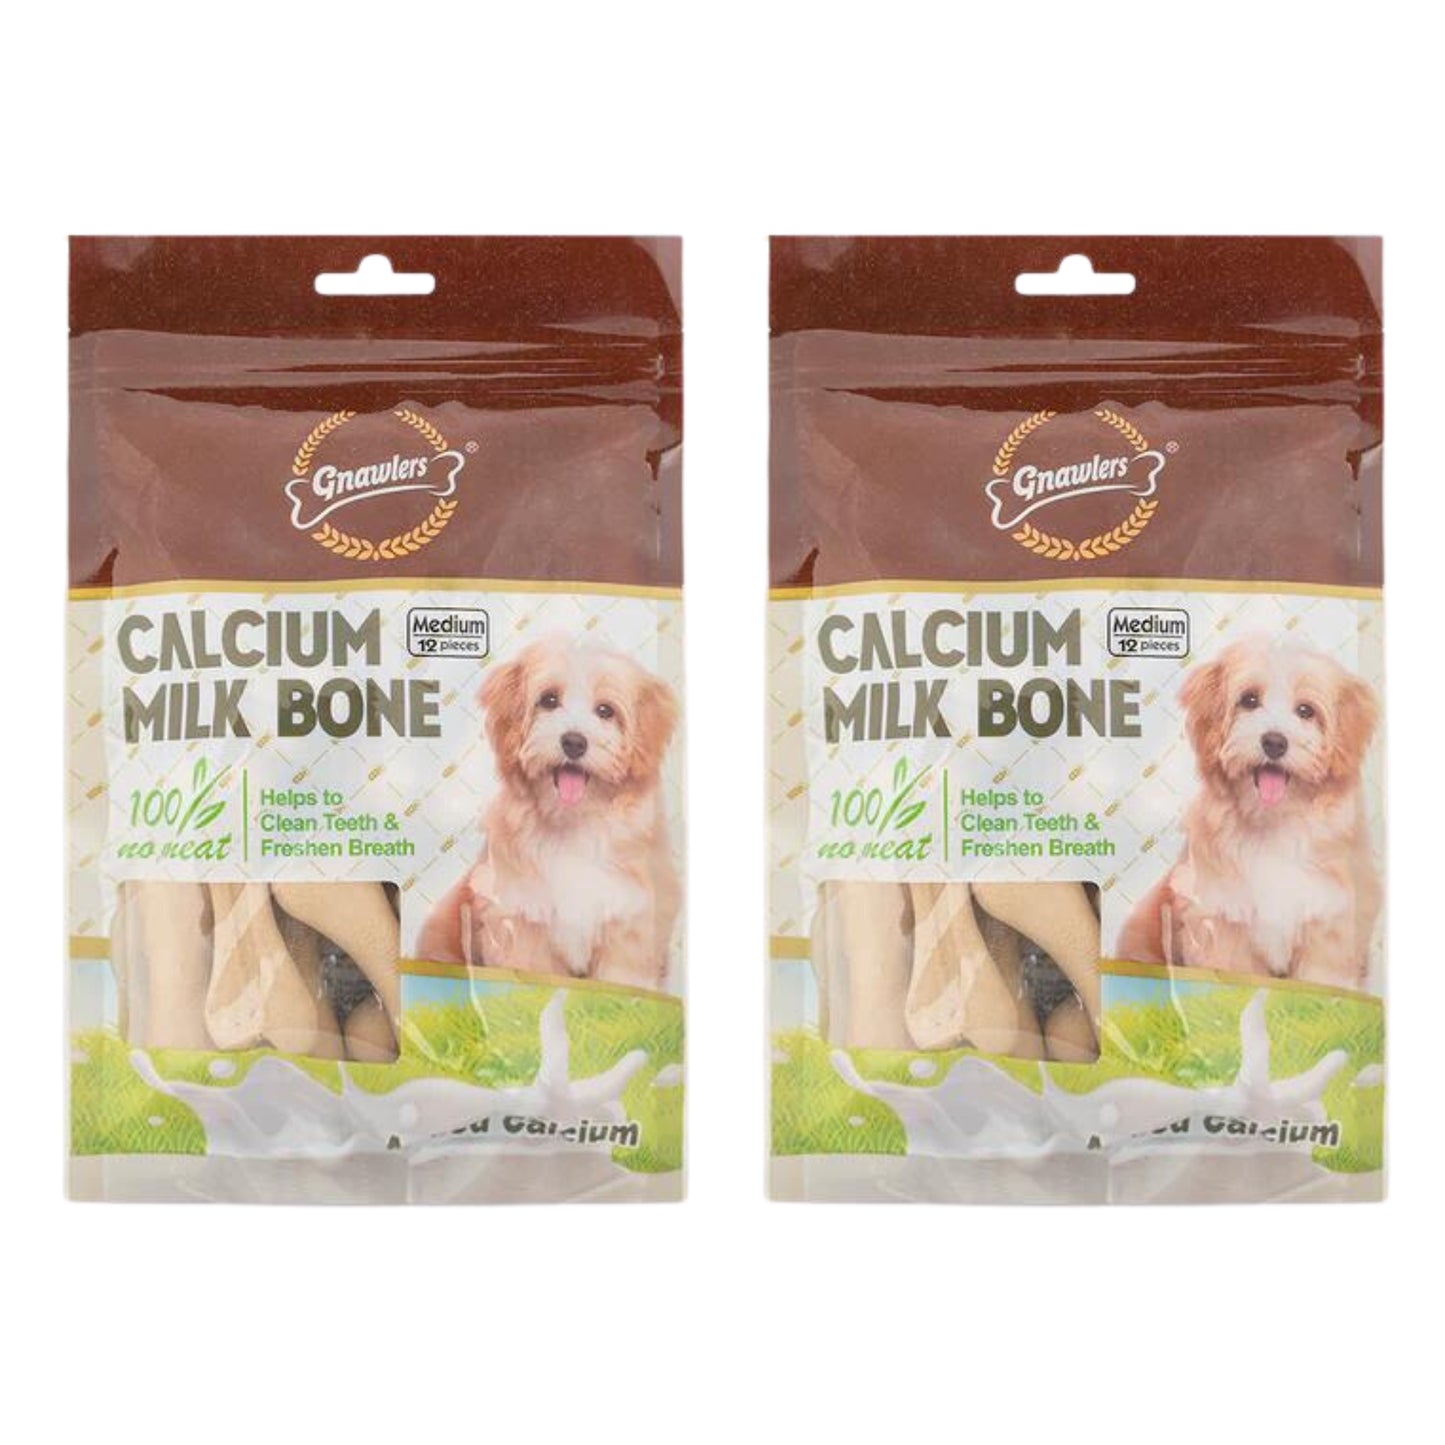 Gnawlers Calcium Milk Bones Dog Treats 12Pcs (Medium), Pack of 2